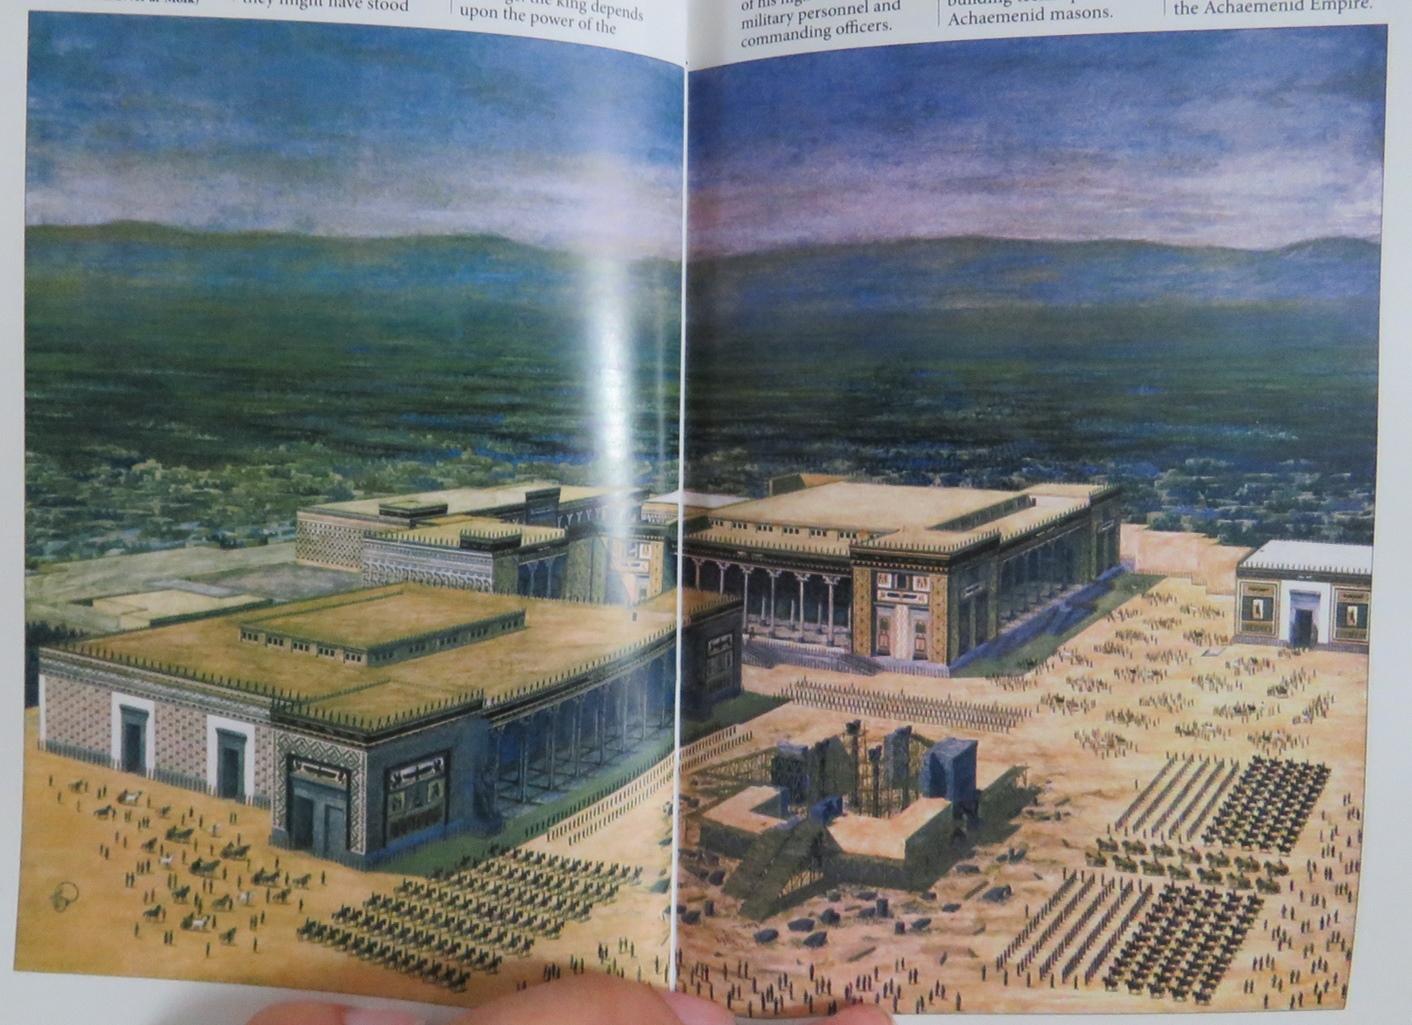 双胞胎姐妹带你了解波斯建筑文明之星阿里卡普宫--见道网